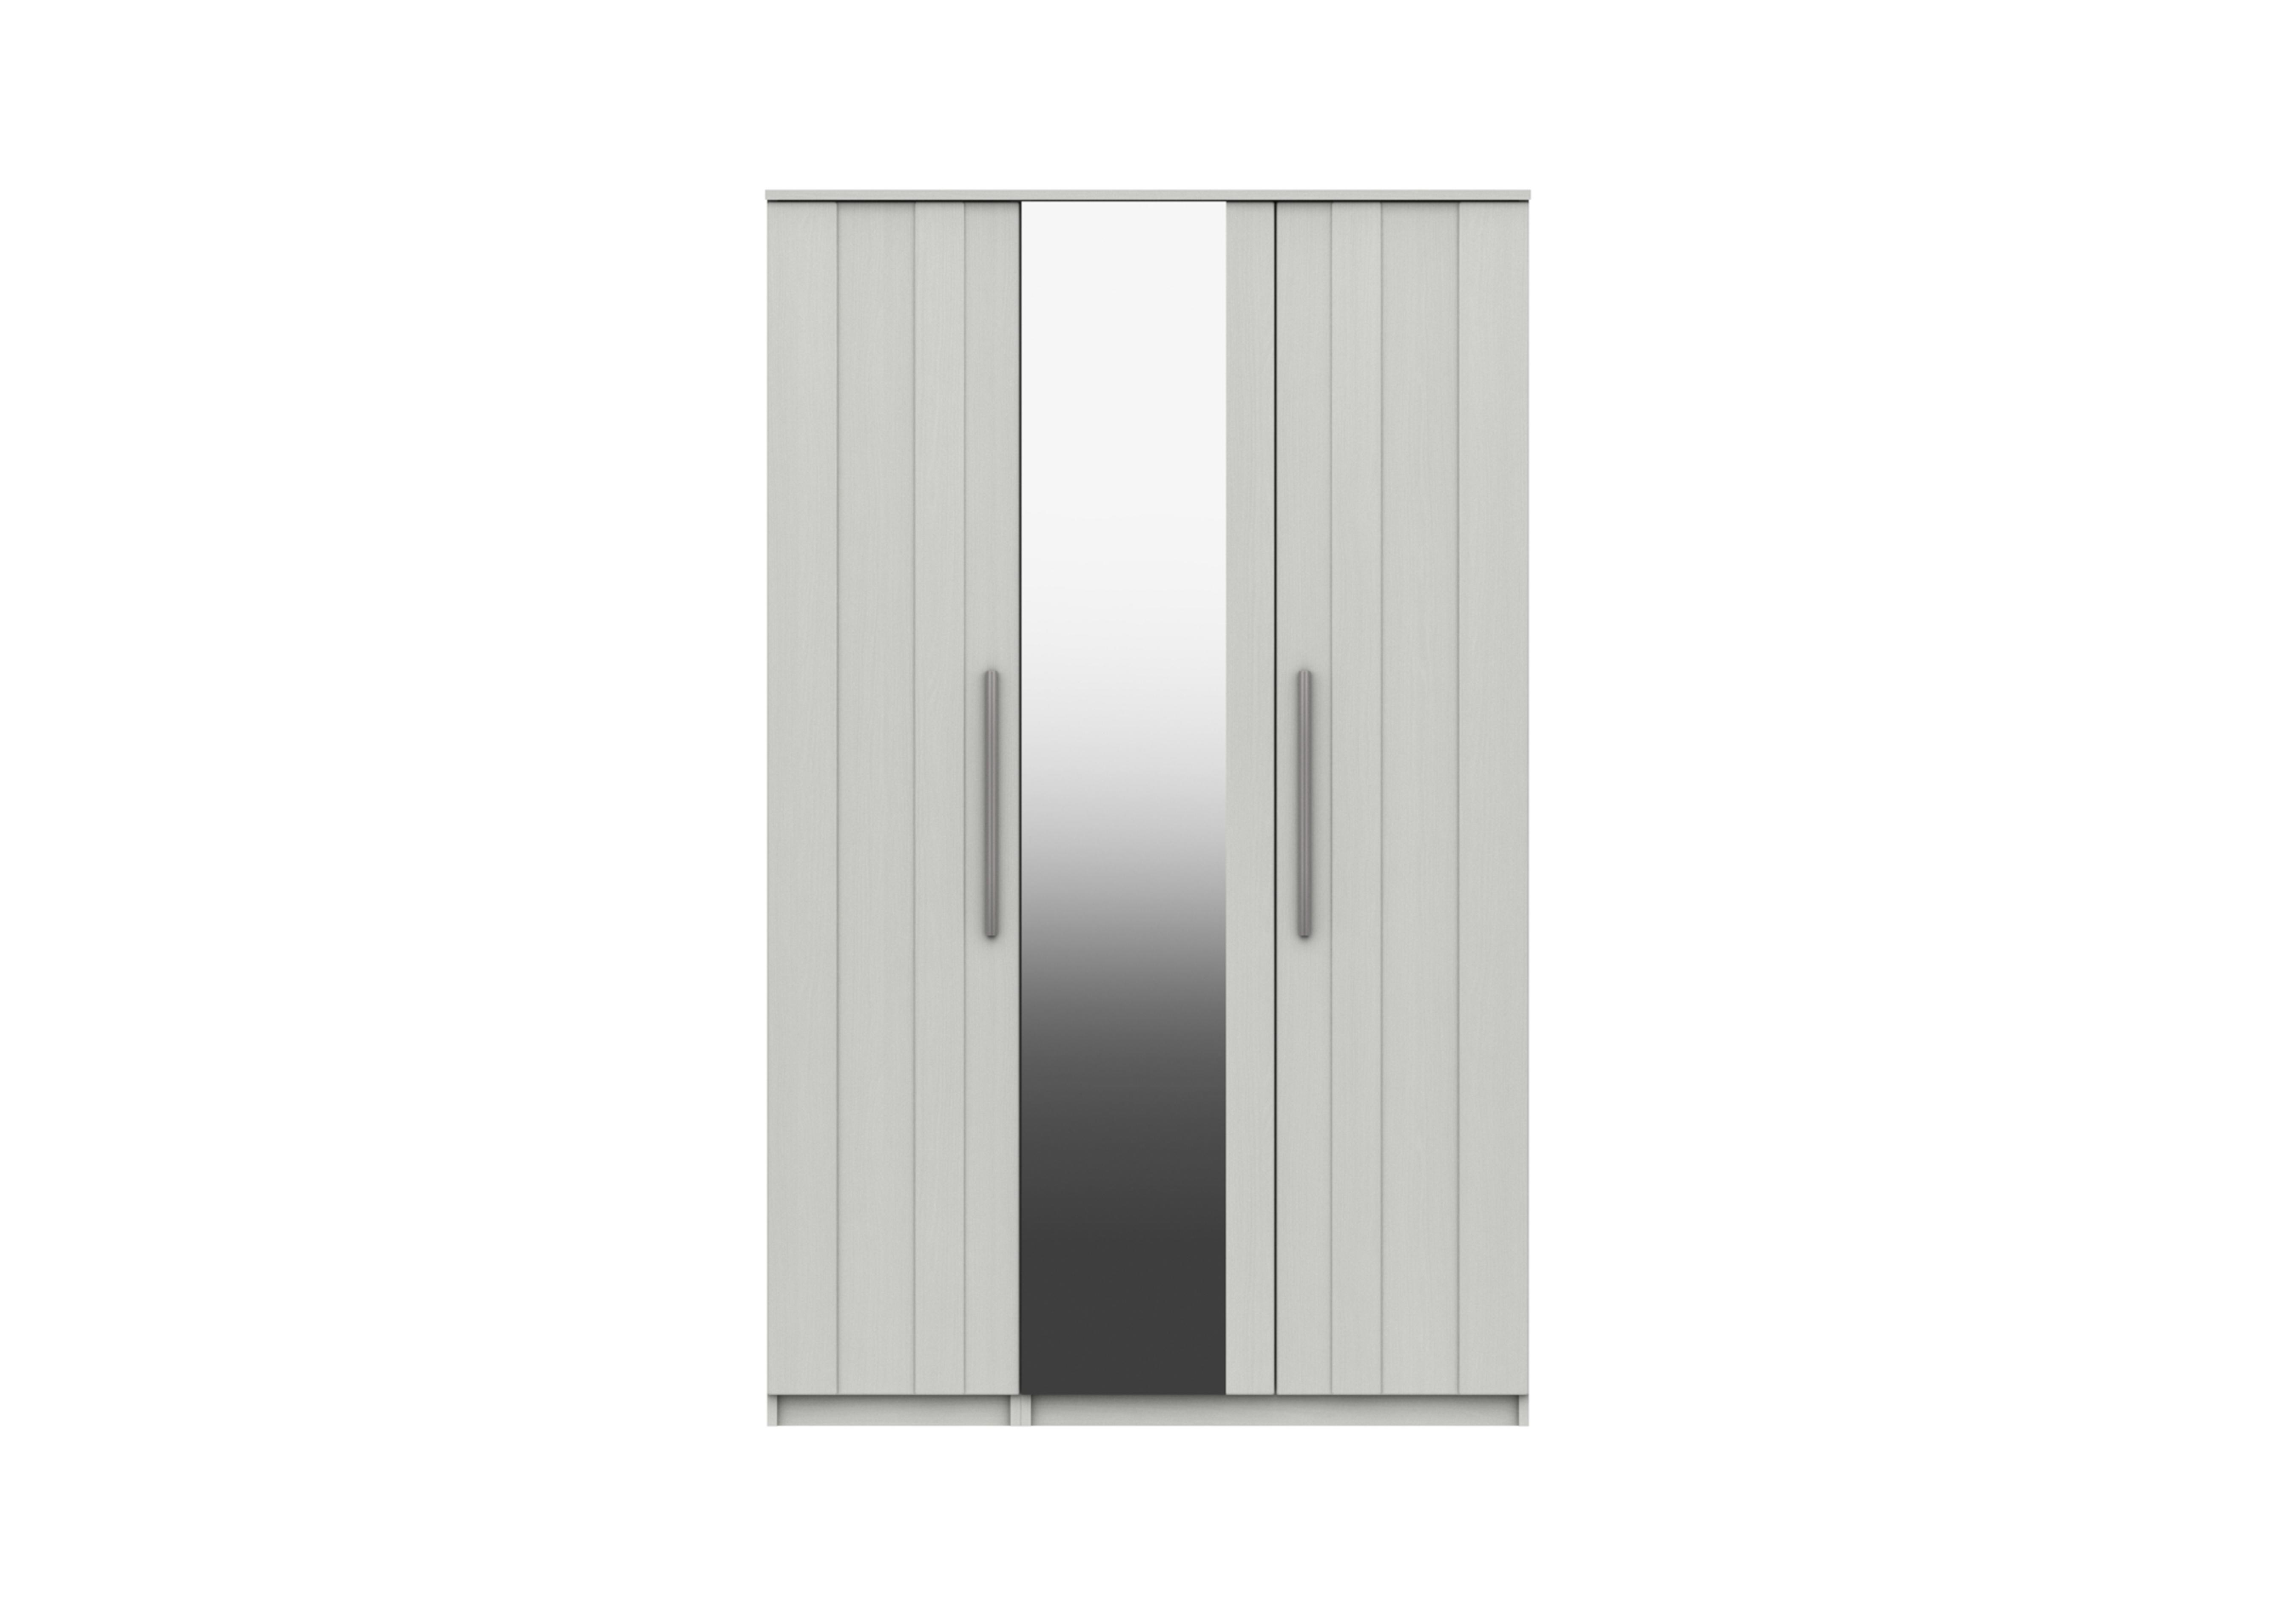 Victoria 3 Door Wardrobe with Mirror in White on Furniture Village